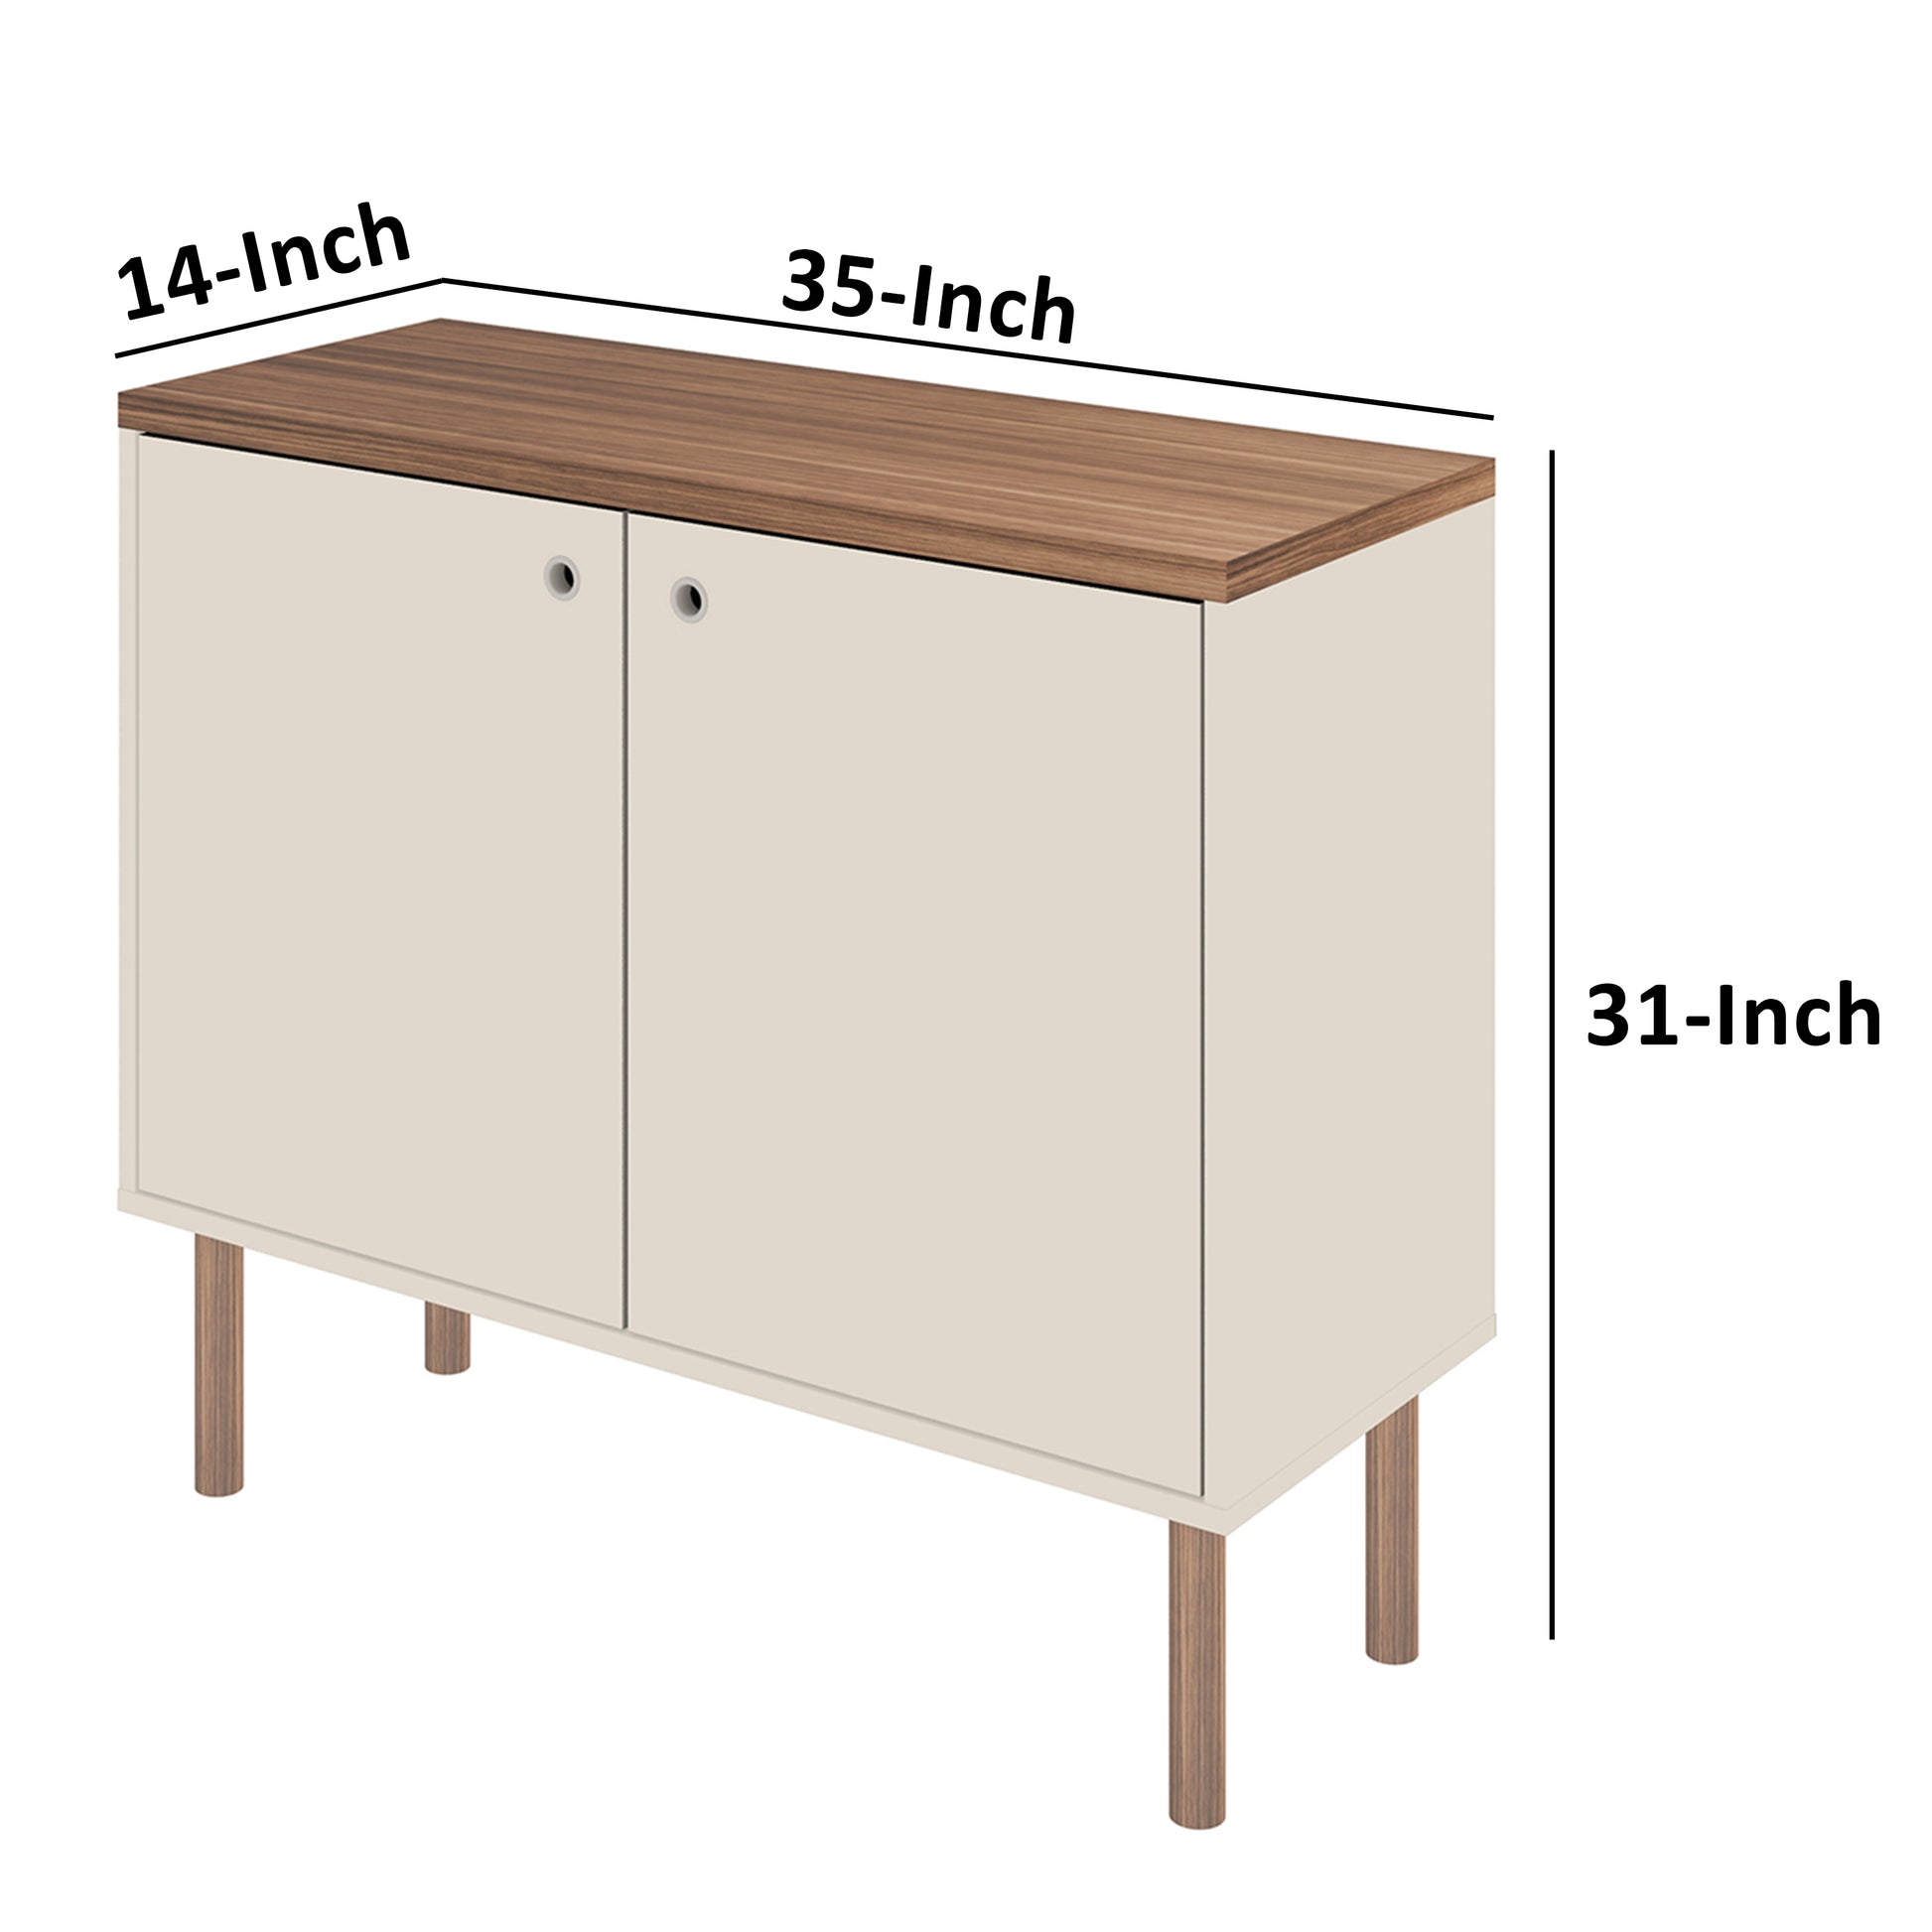 35 Inch 2 Door Wooden Storage Cabinet Rectangular 1 Shelf White Brown By The Urban Port UPT-271307